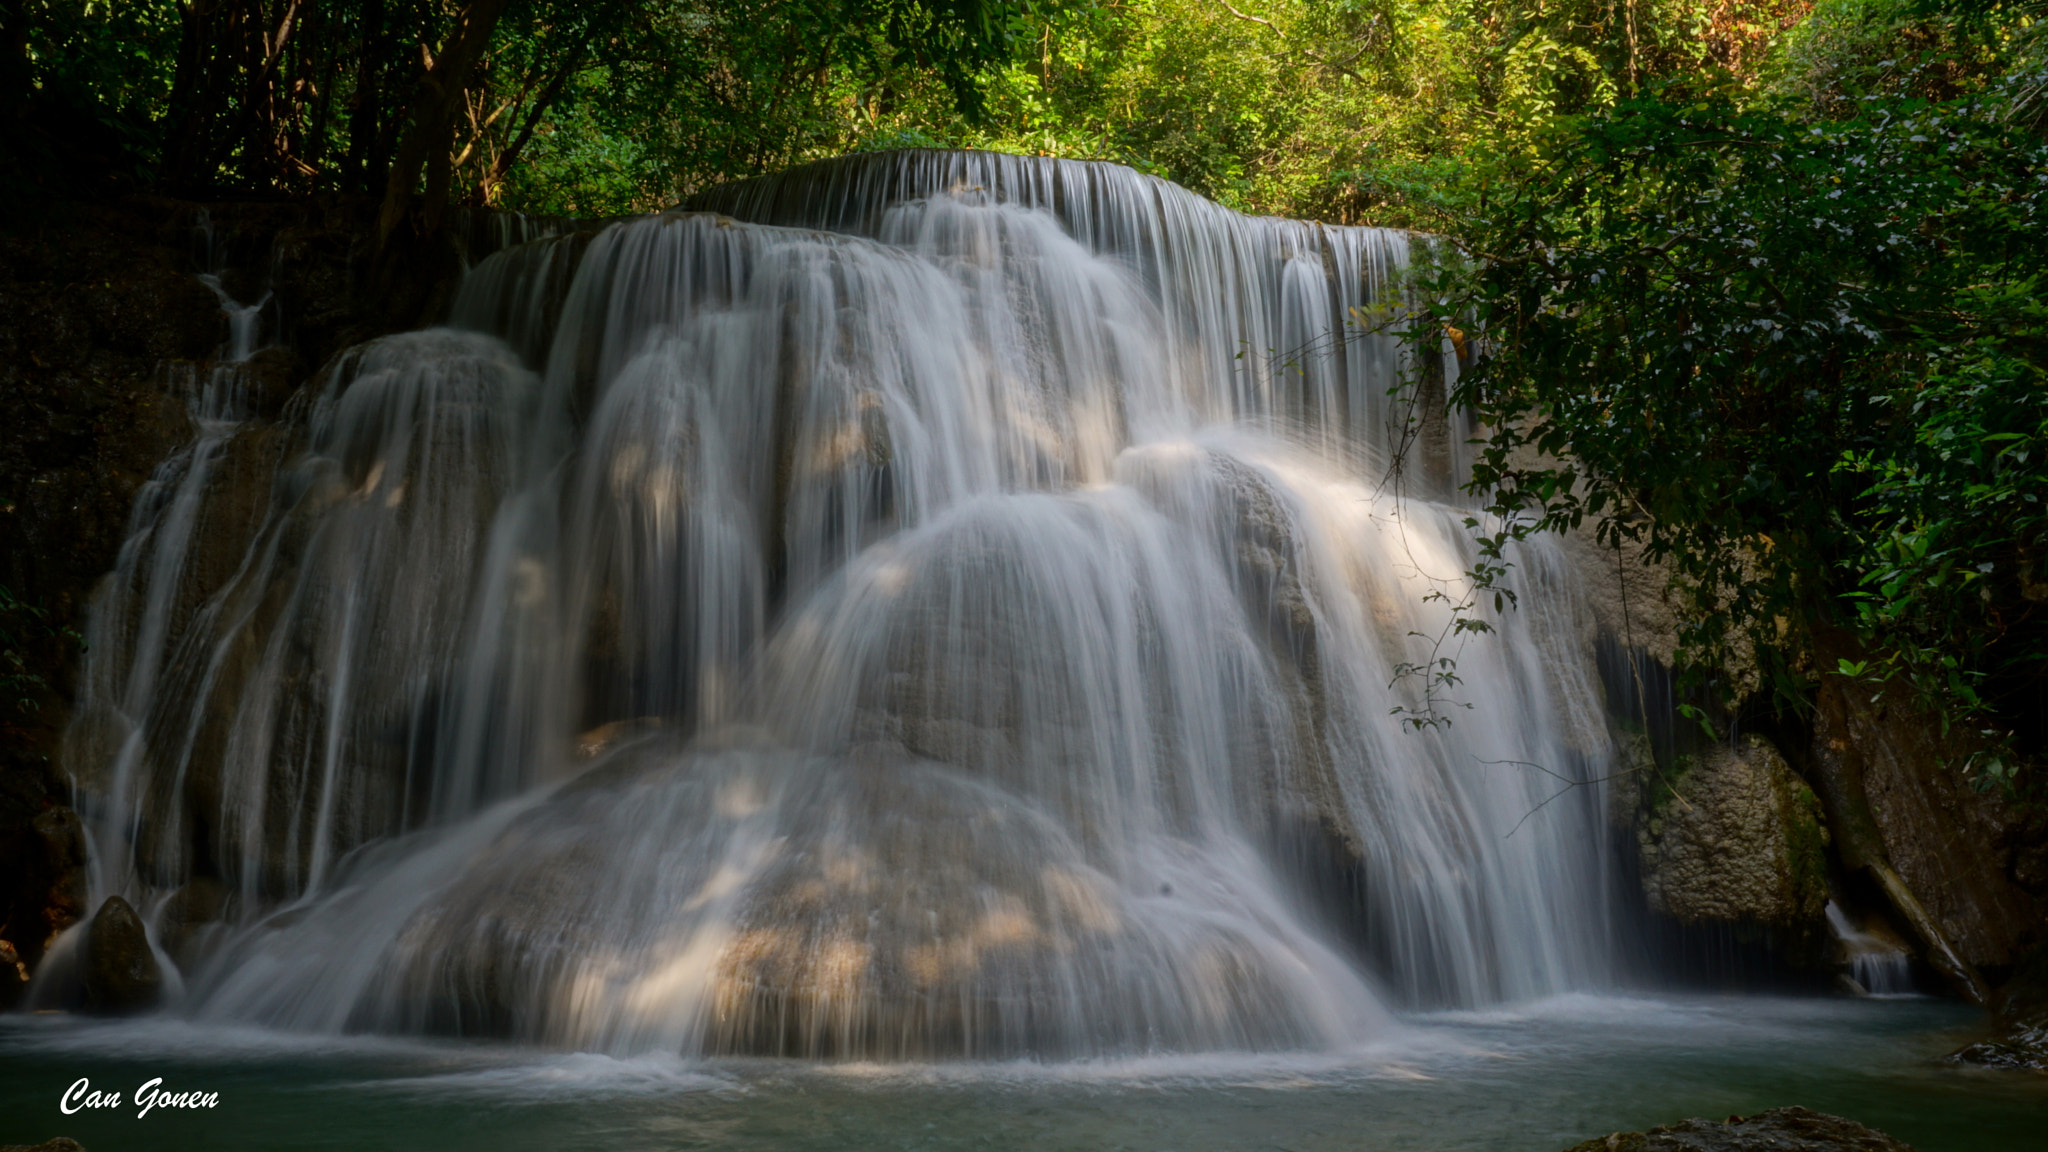 Sony E 18-50mm F4-5.6 sample photo. Huay maekamin waterfall, thailand photography